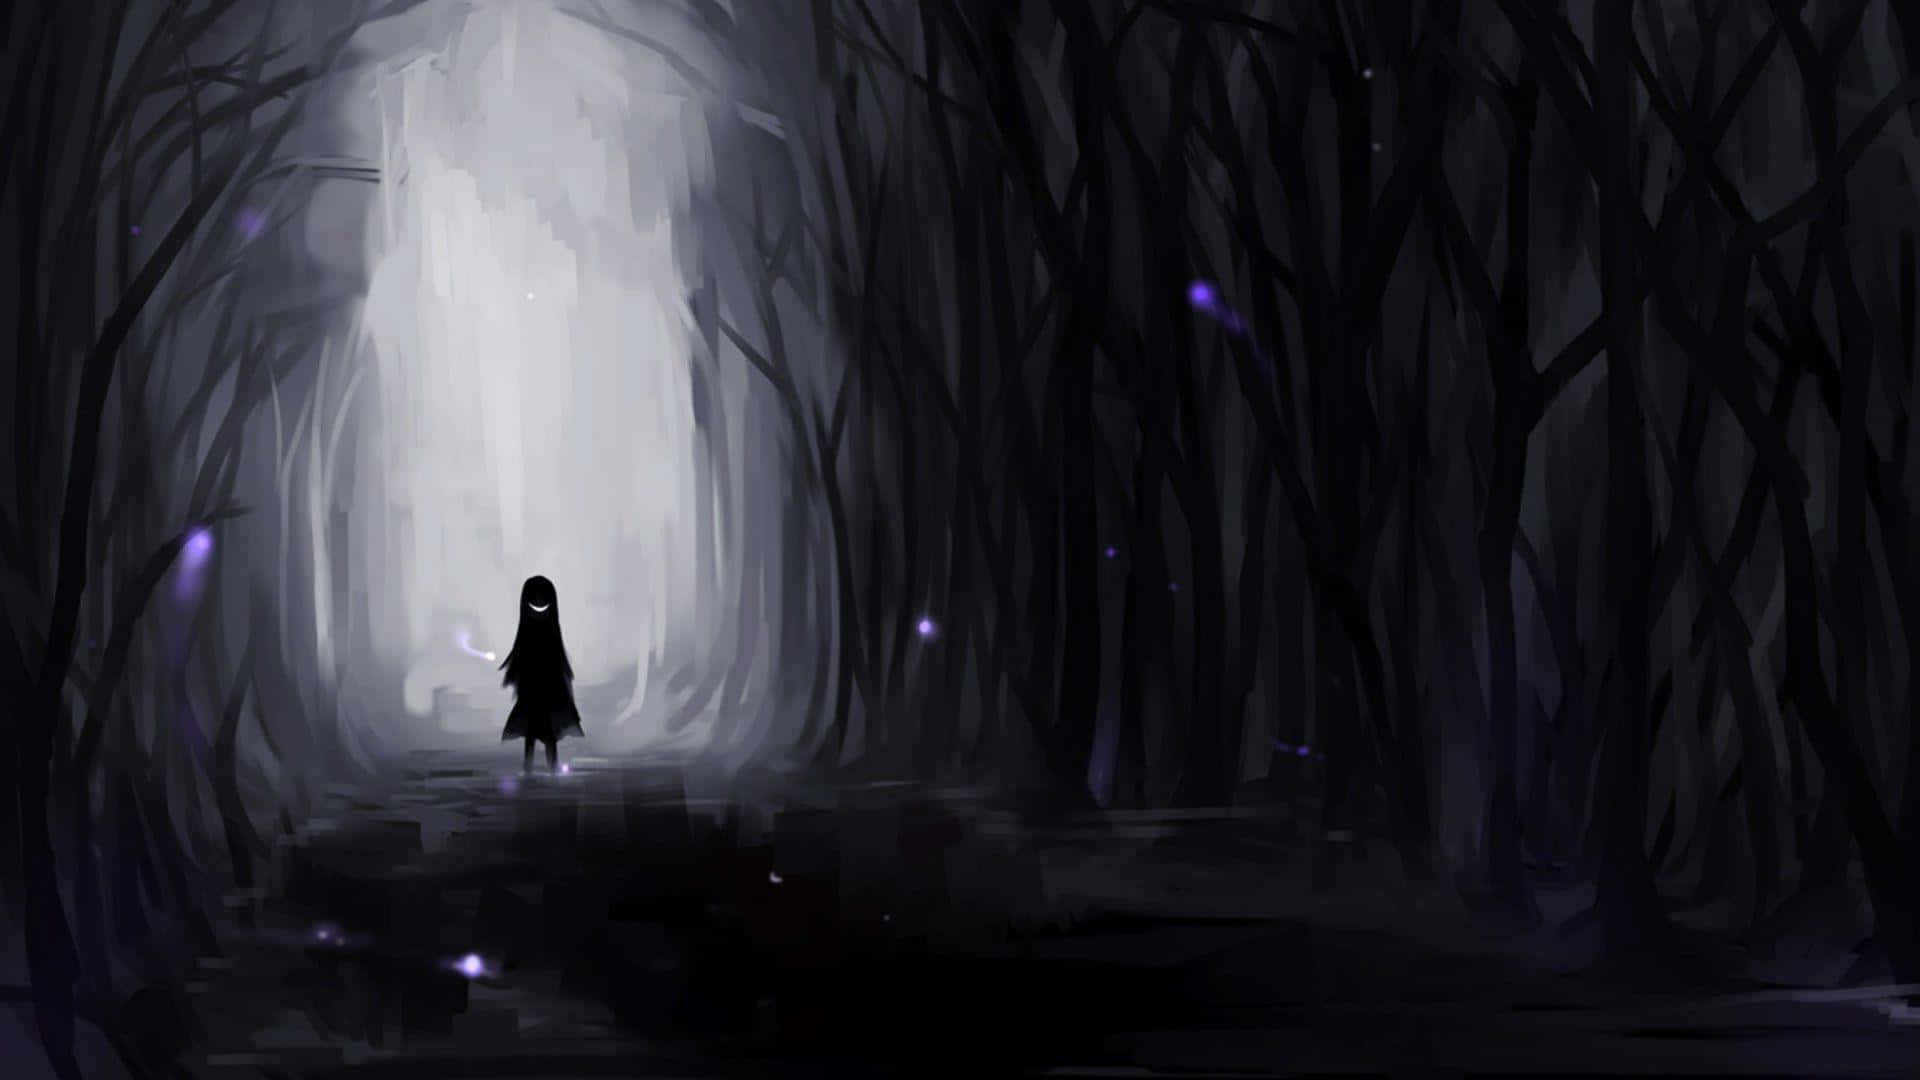 Chicaanime Triste Y Genial En Silueta Dentro De Un Oscuro Bosque. Fondo de pantalla